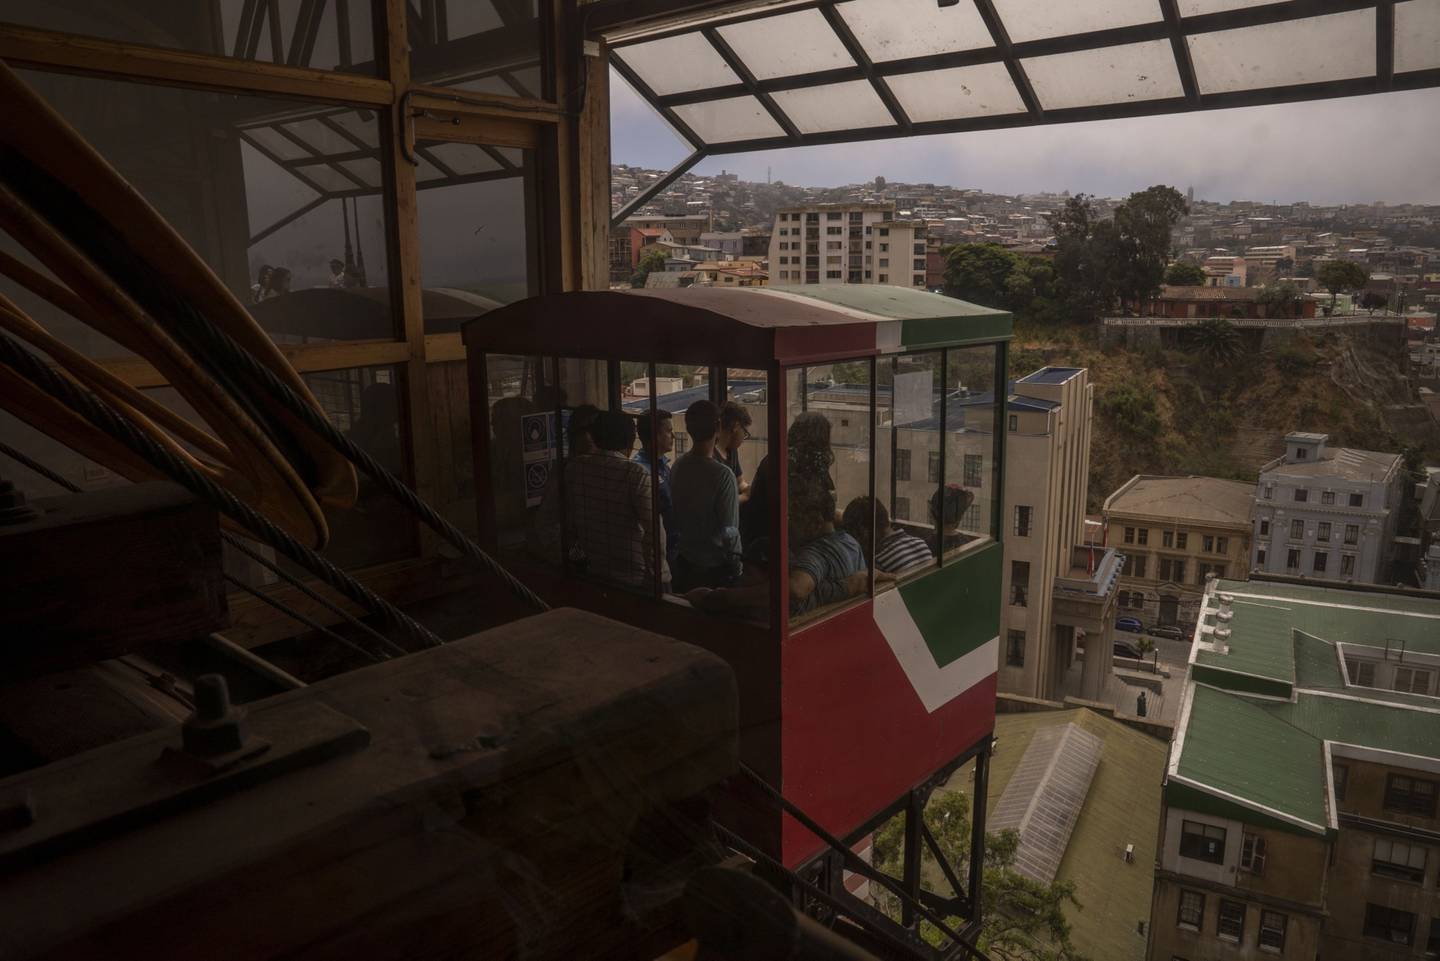 Un funicular en Valparaíso, en Chile. Fotógrafa: Tamara Merino/Bloombergdfd